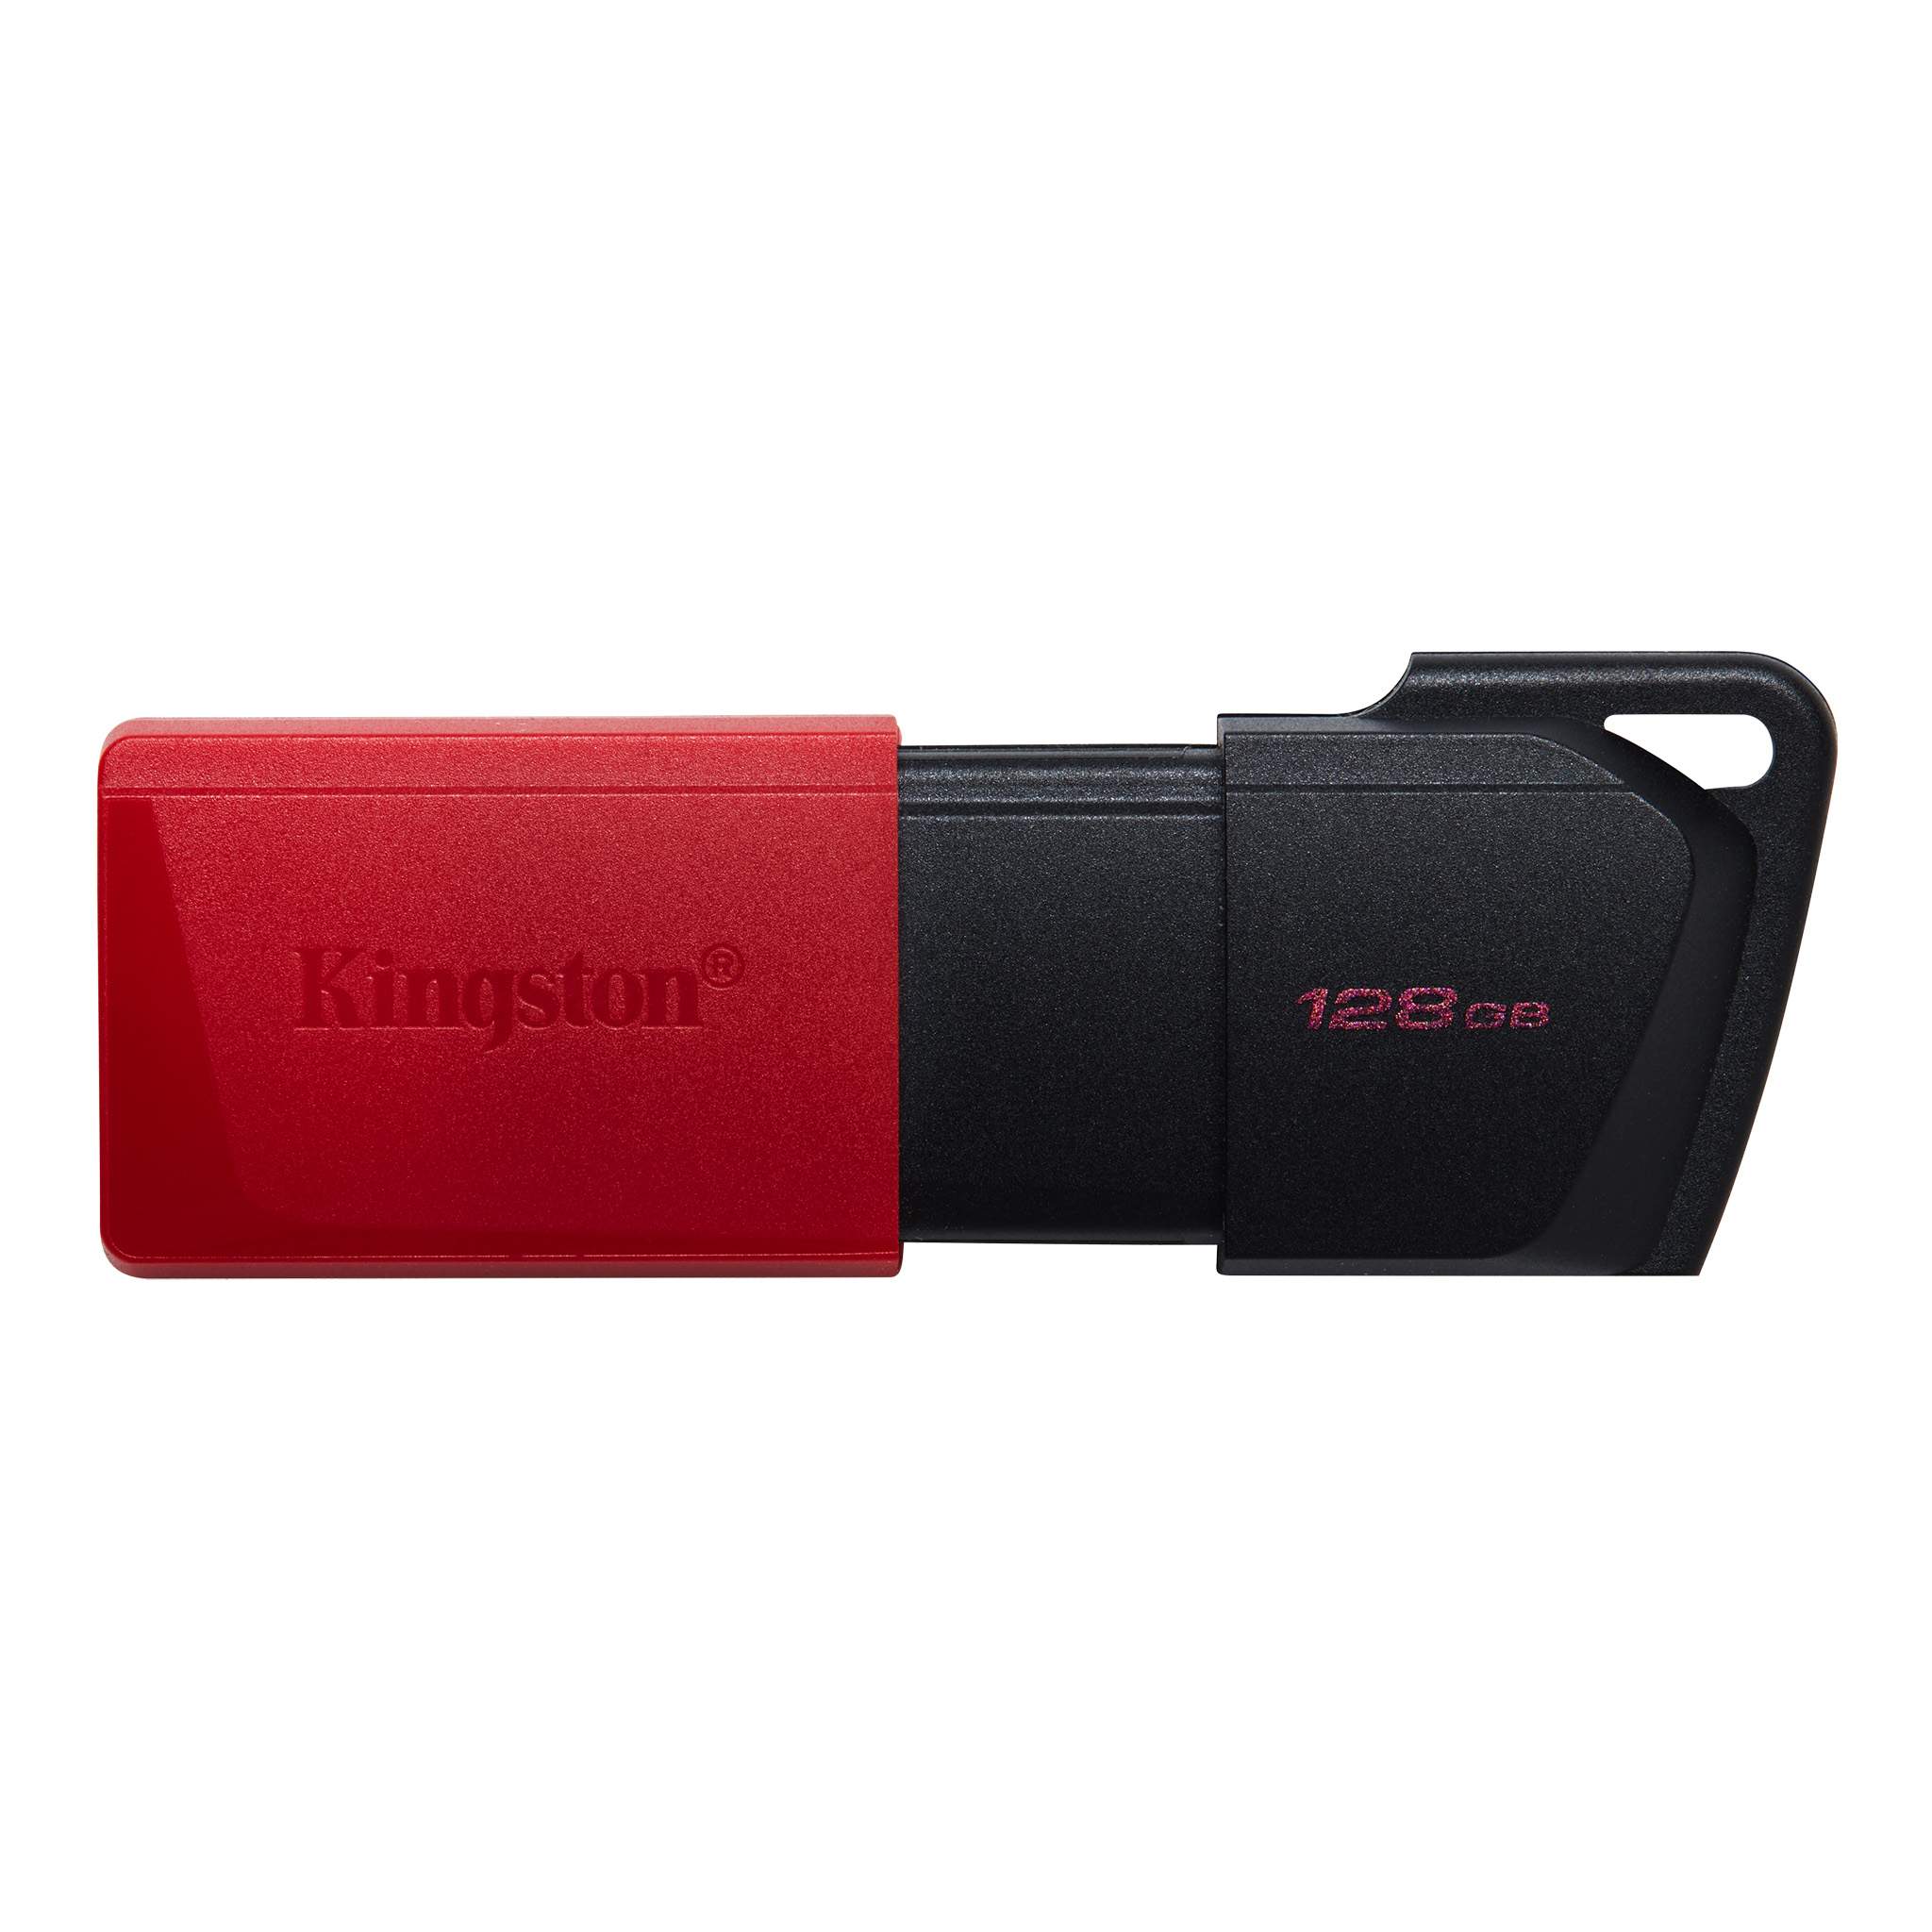 USB KINGSTON 128GB DATATRAVELER EXODIA M DTXM/128GB (USB 3.2 GEN 1)